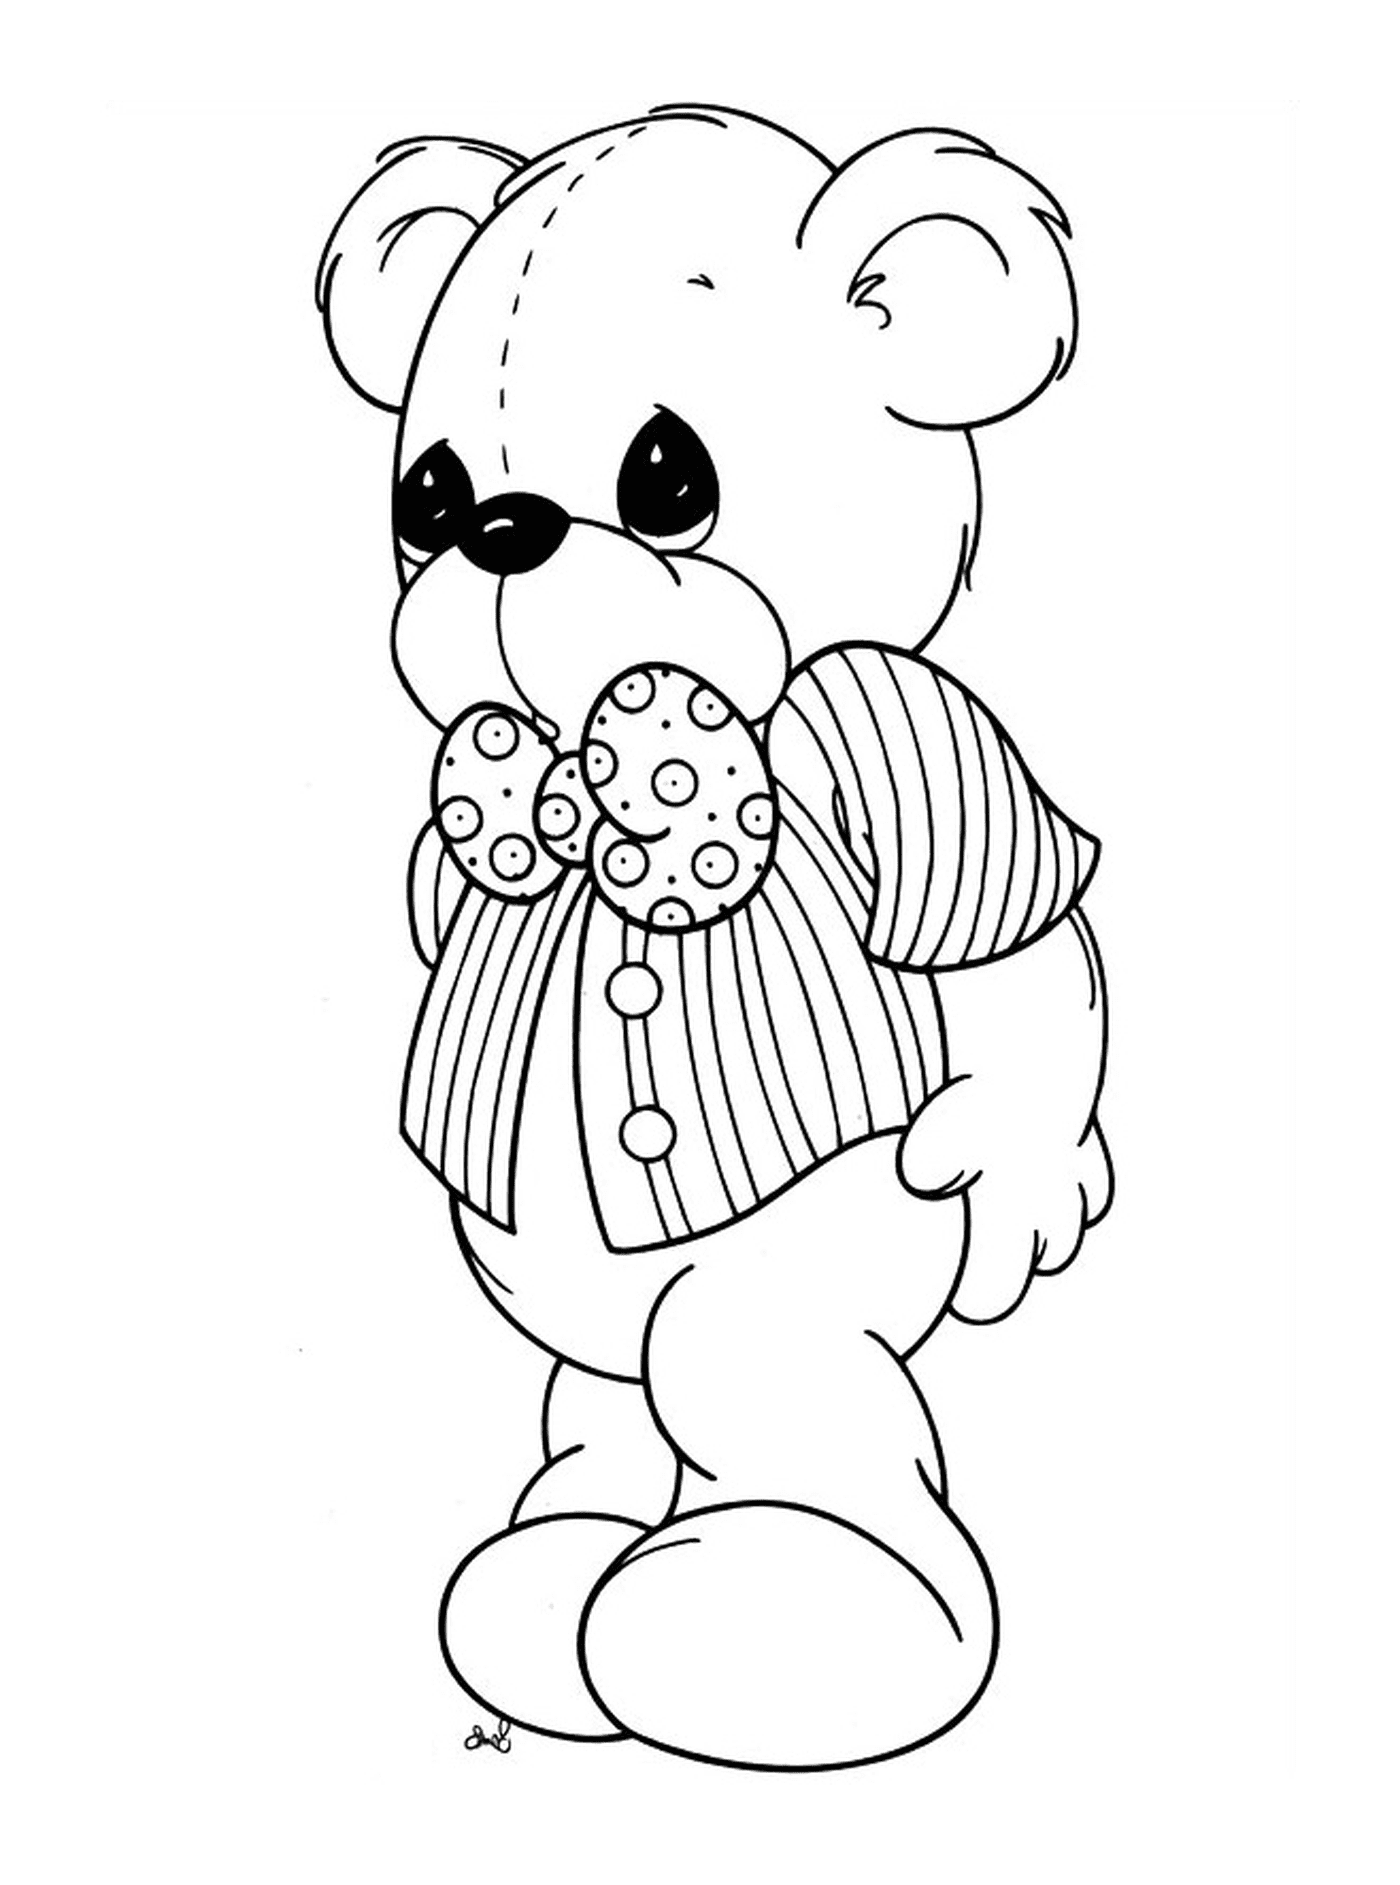  可爱的泰迪熊 